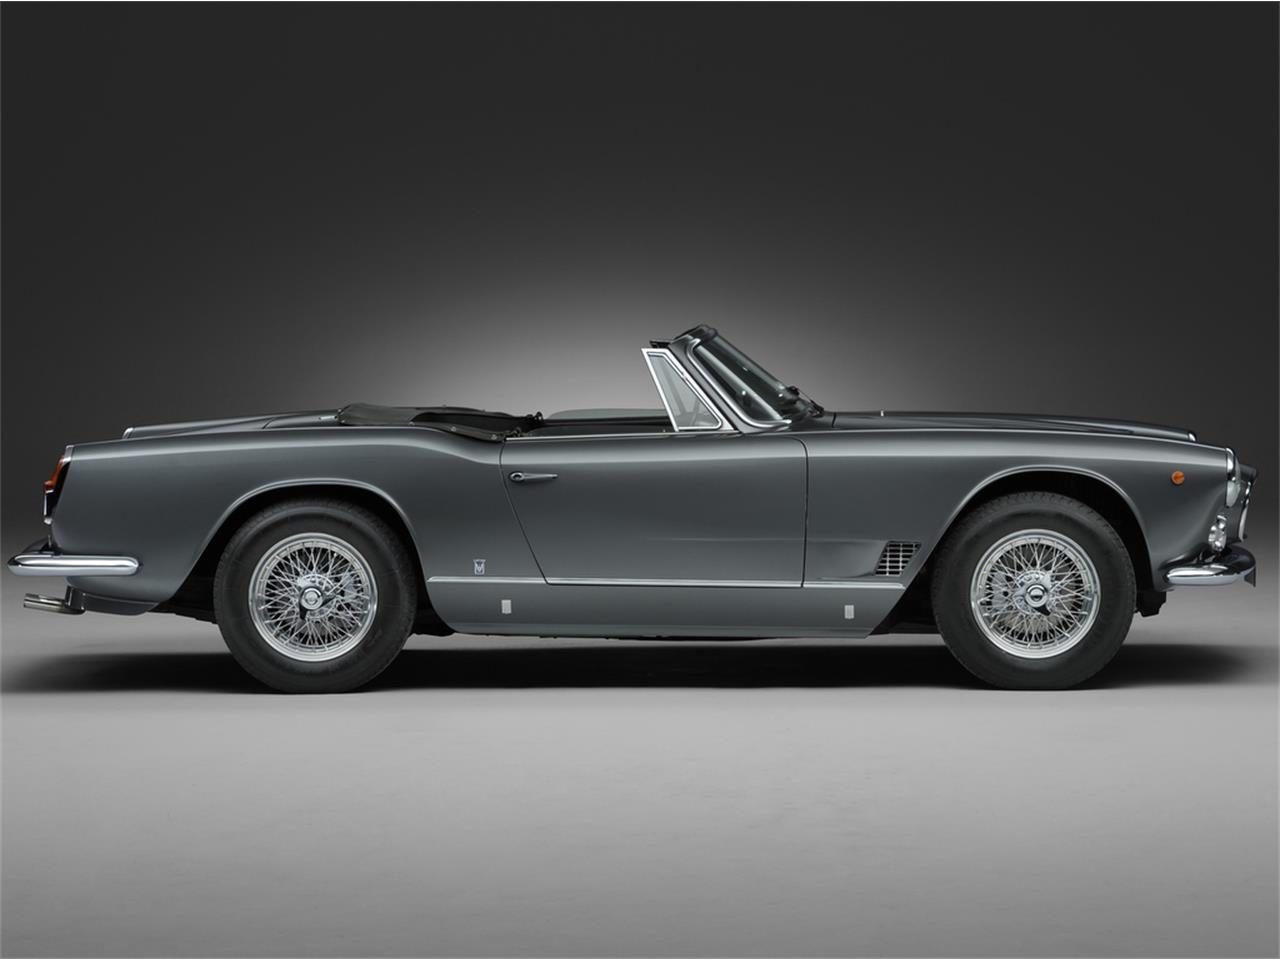 1963 Maserati 3500 GTI Vignale Spyder for Sale ...